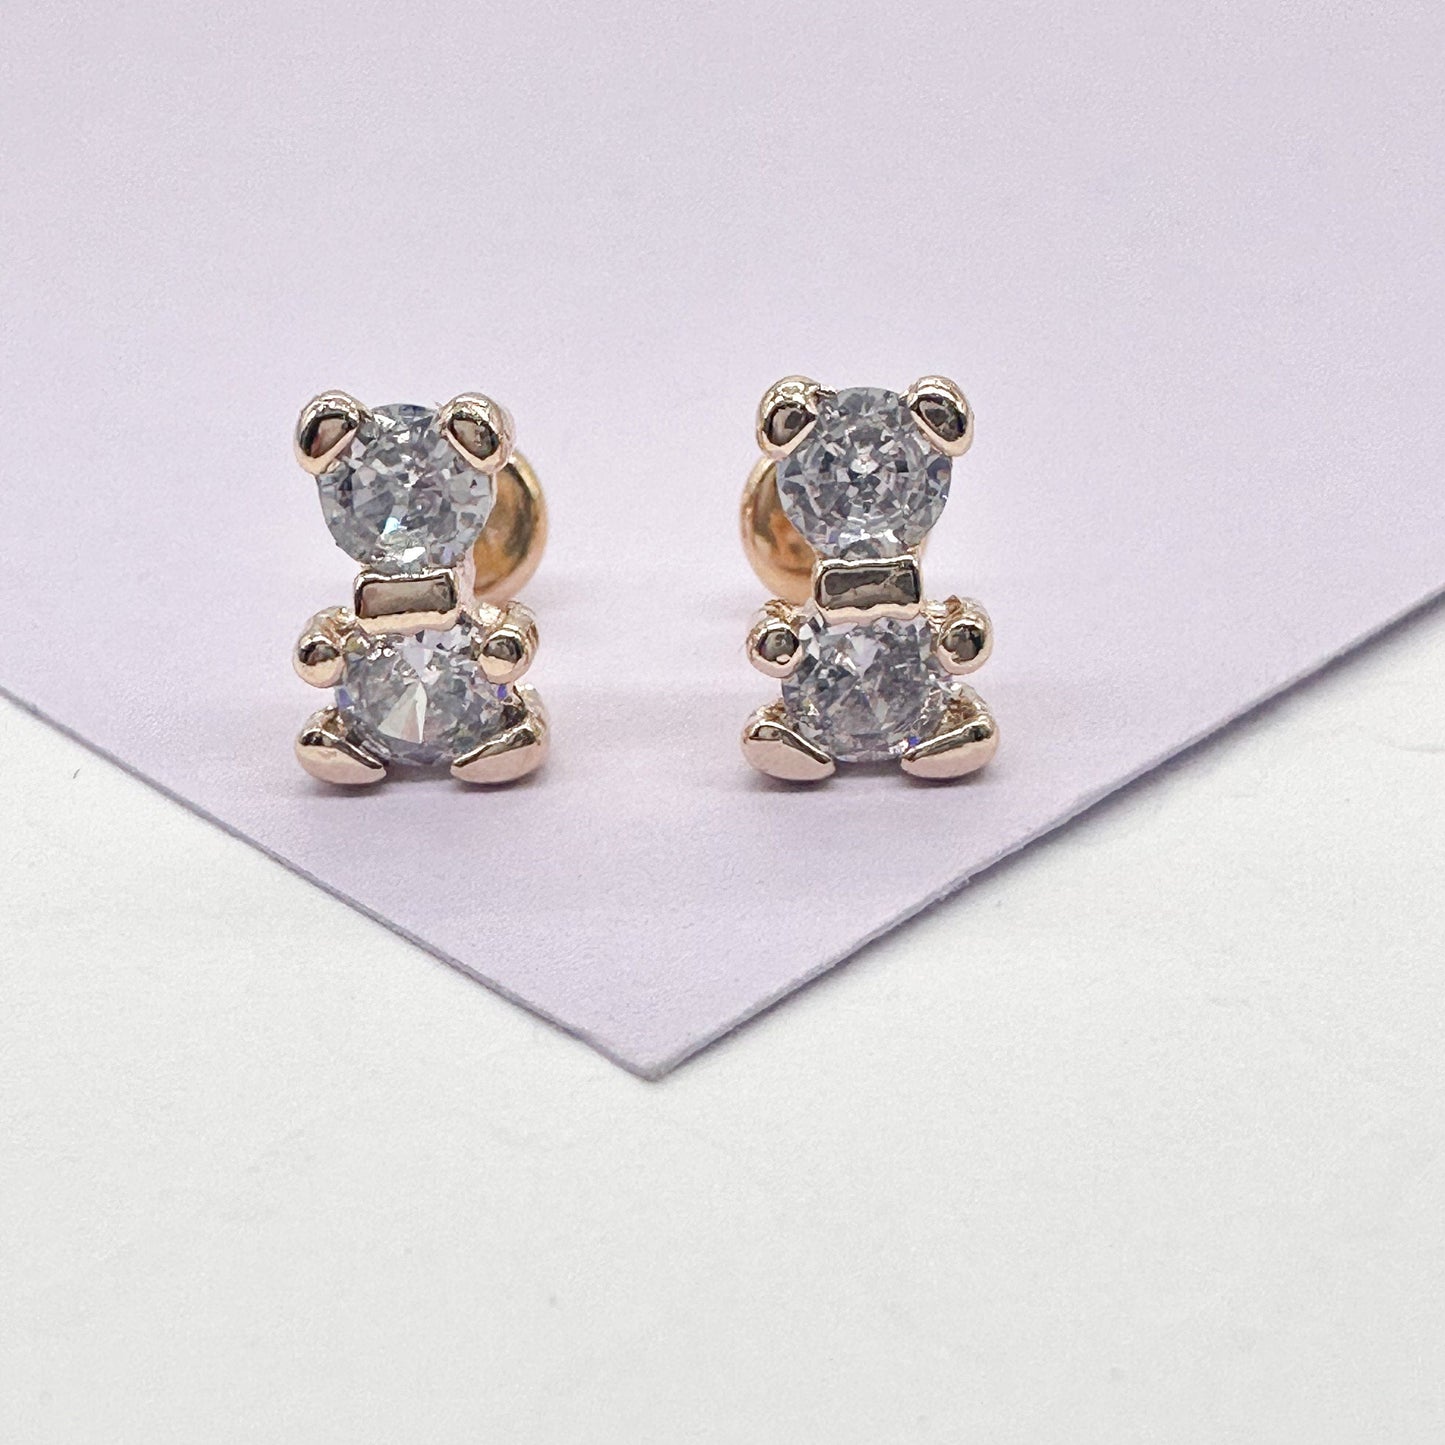 18k Gold Filled Zirconia Teddy Bear Earrings